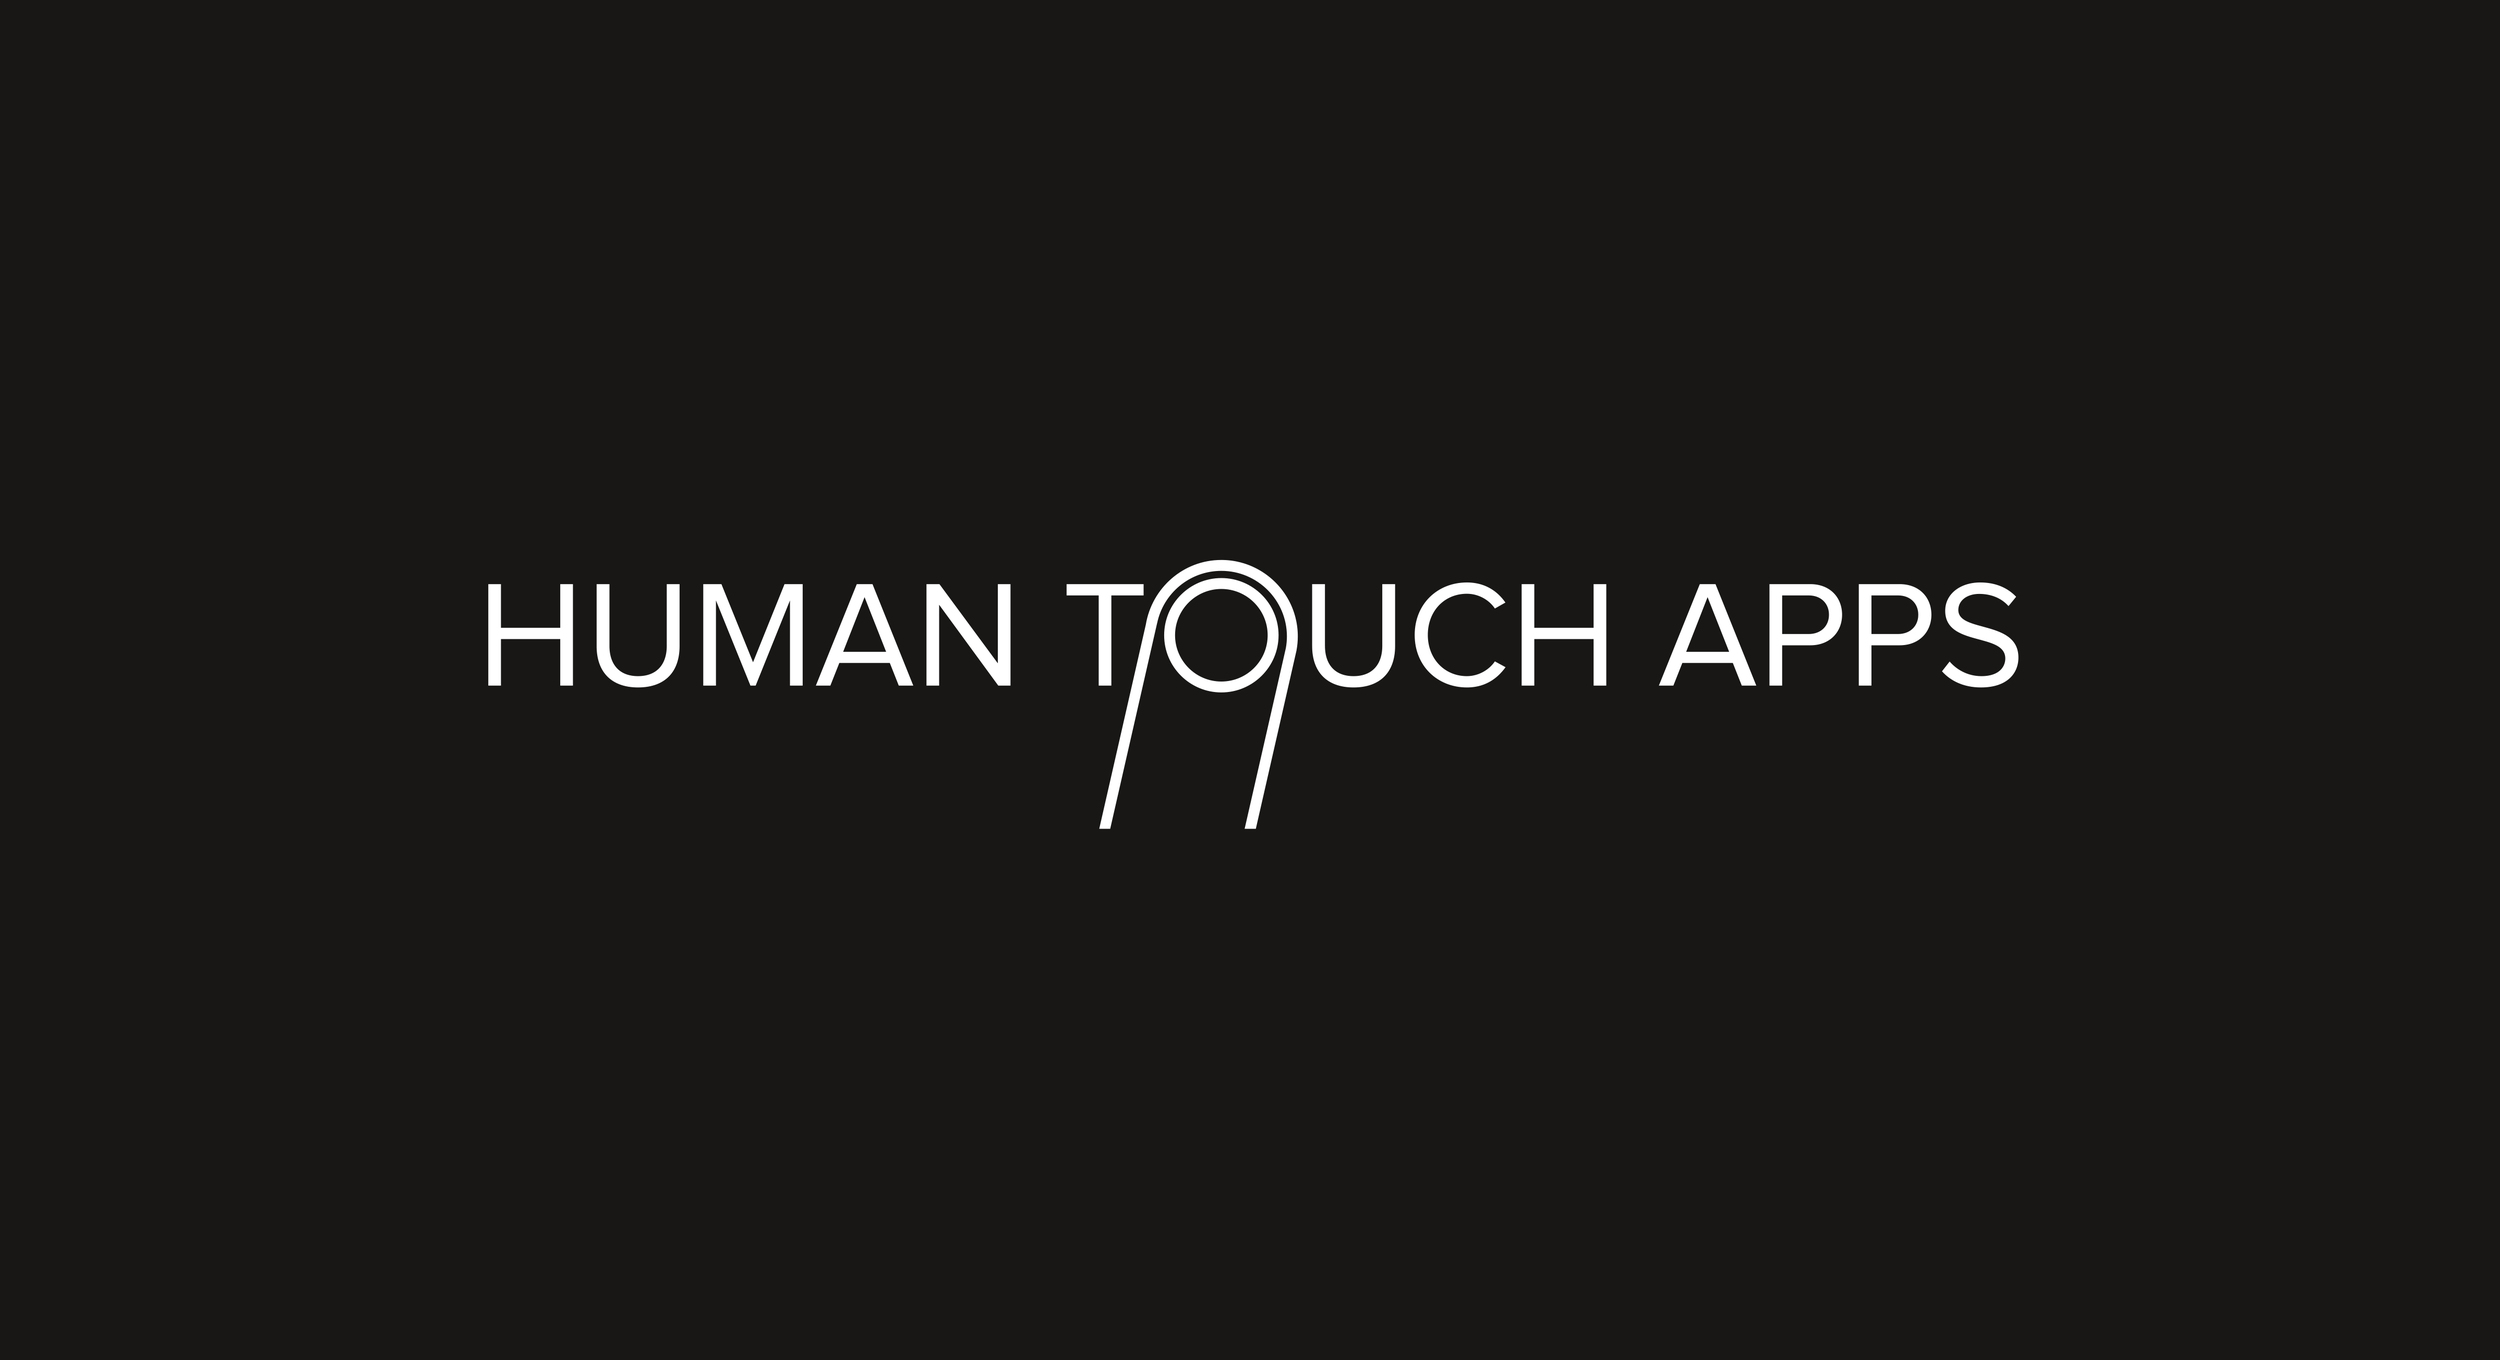 A_HumanTouch_Apps_neg.jpg